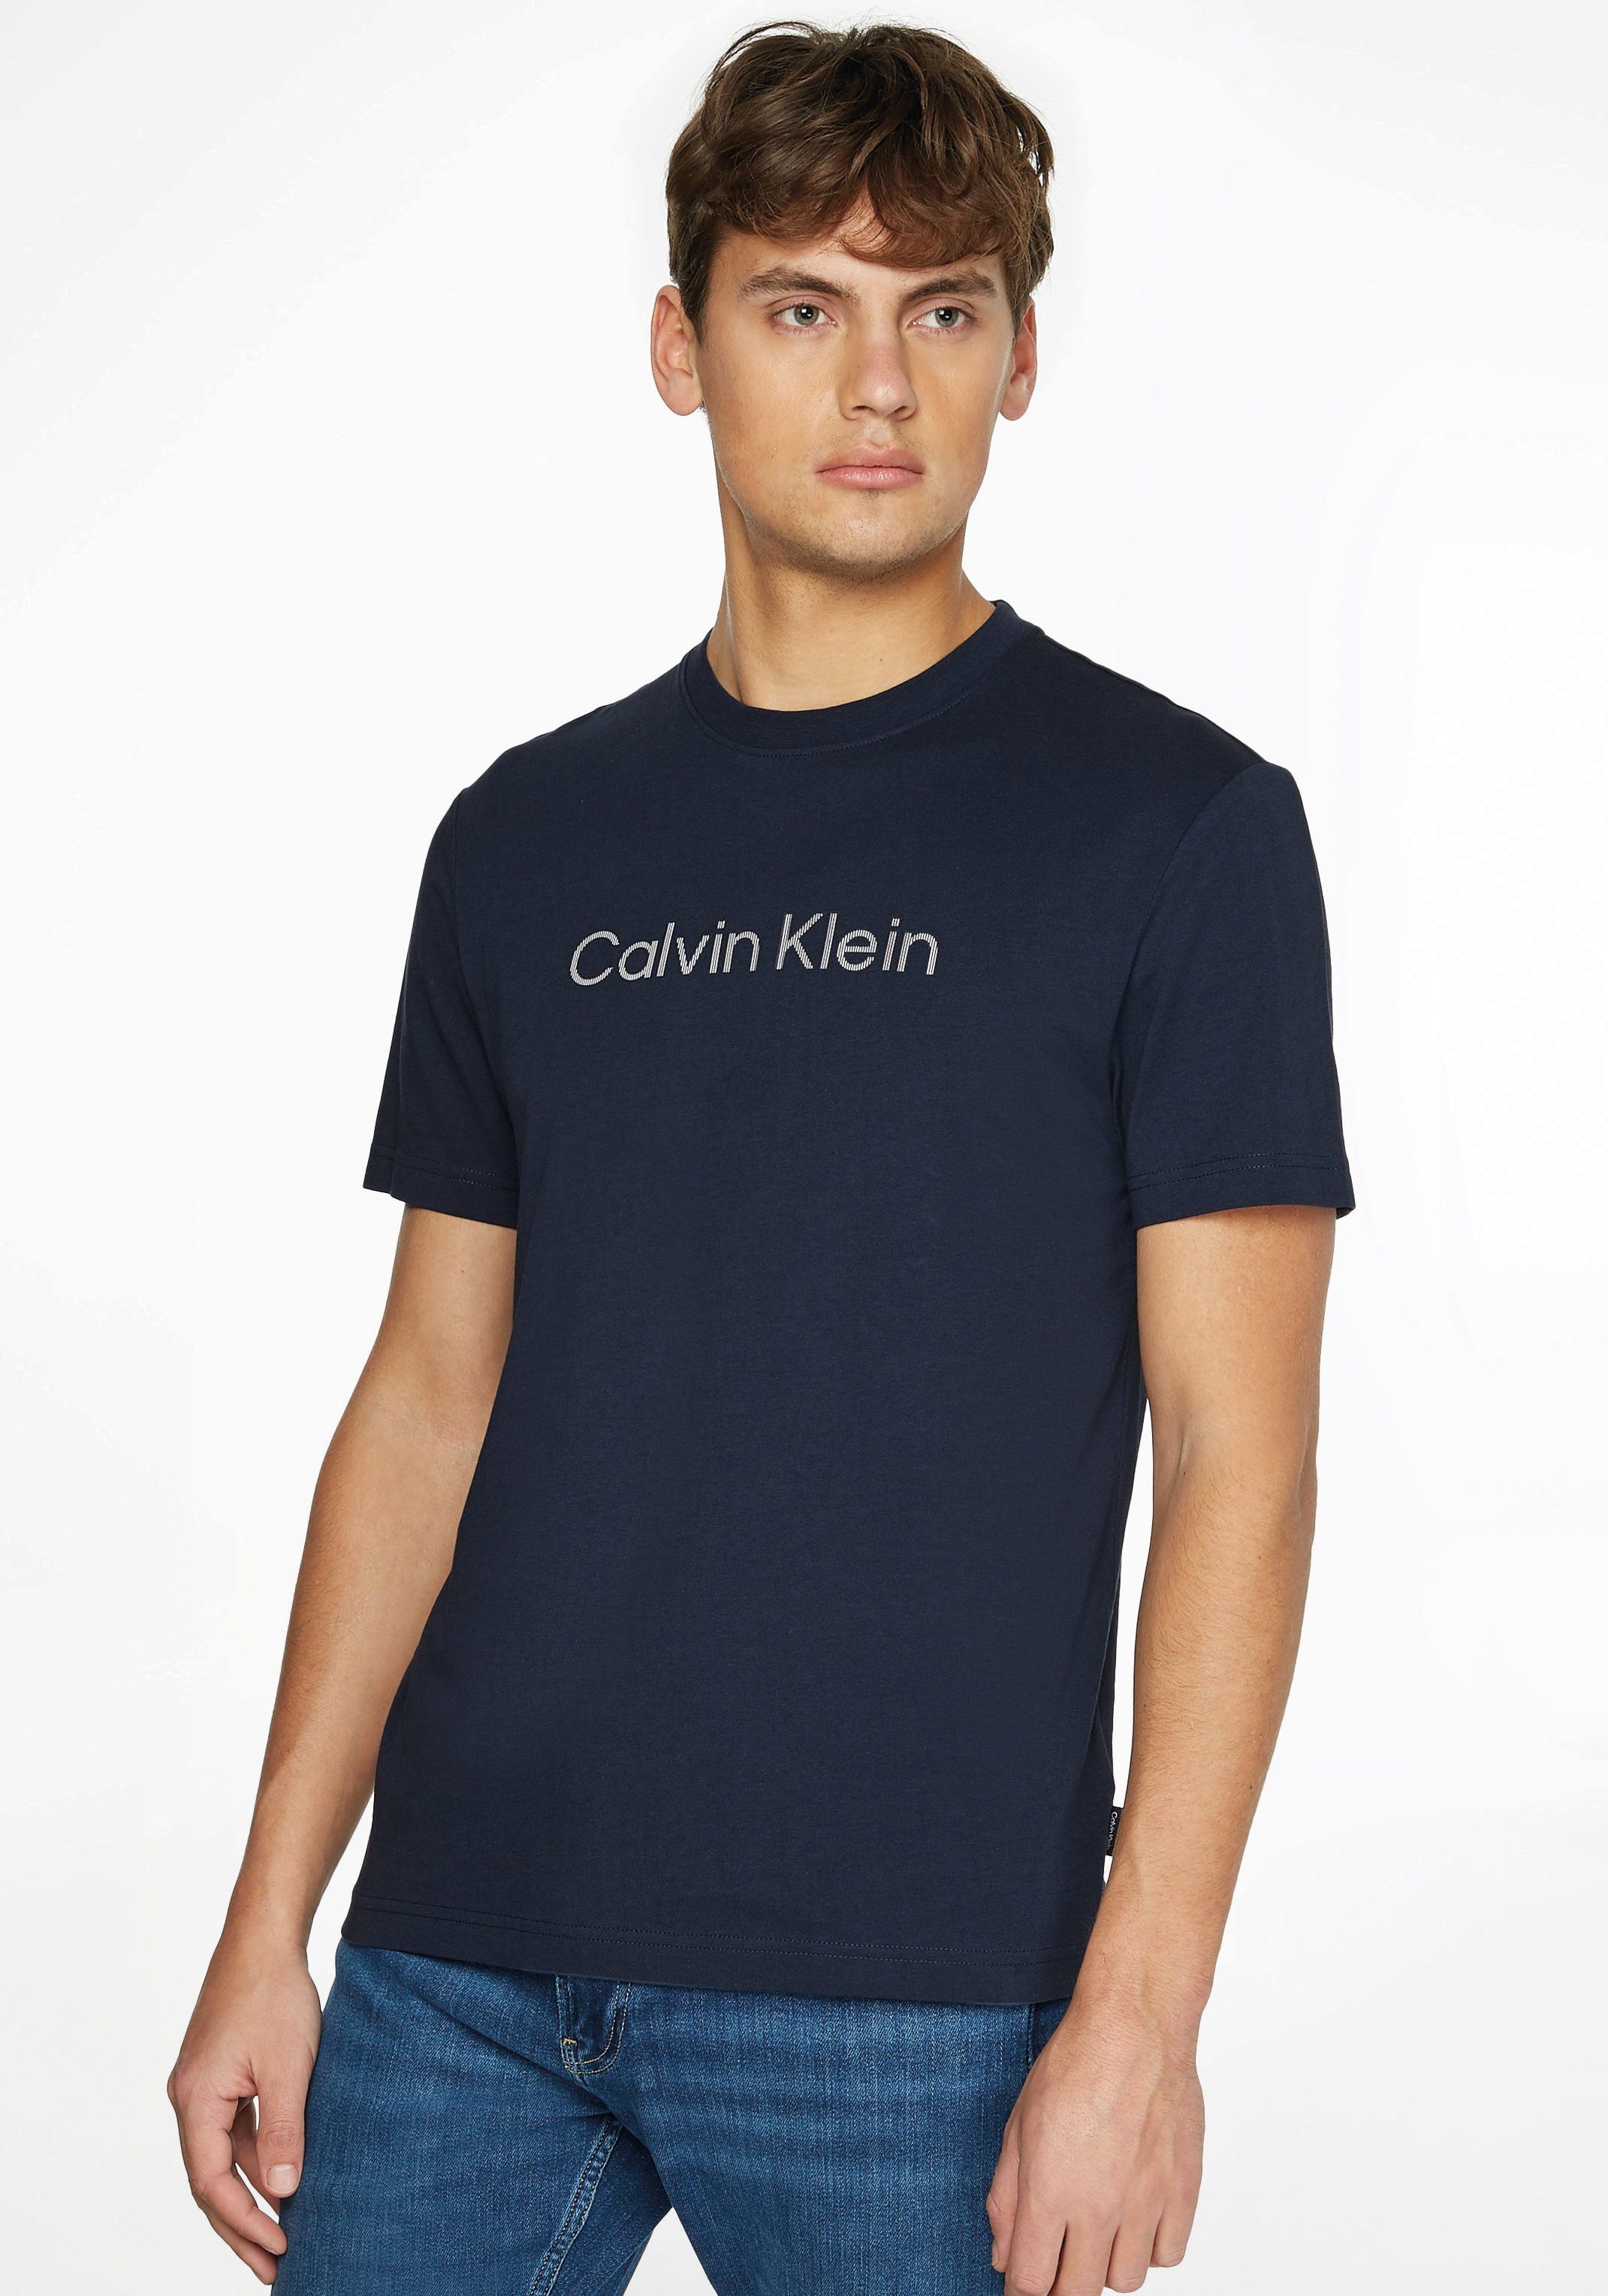 STRIPED LOGO T-Shirt RAISED Klein Calvin